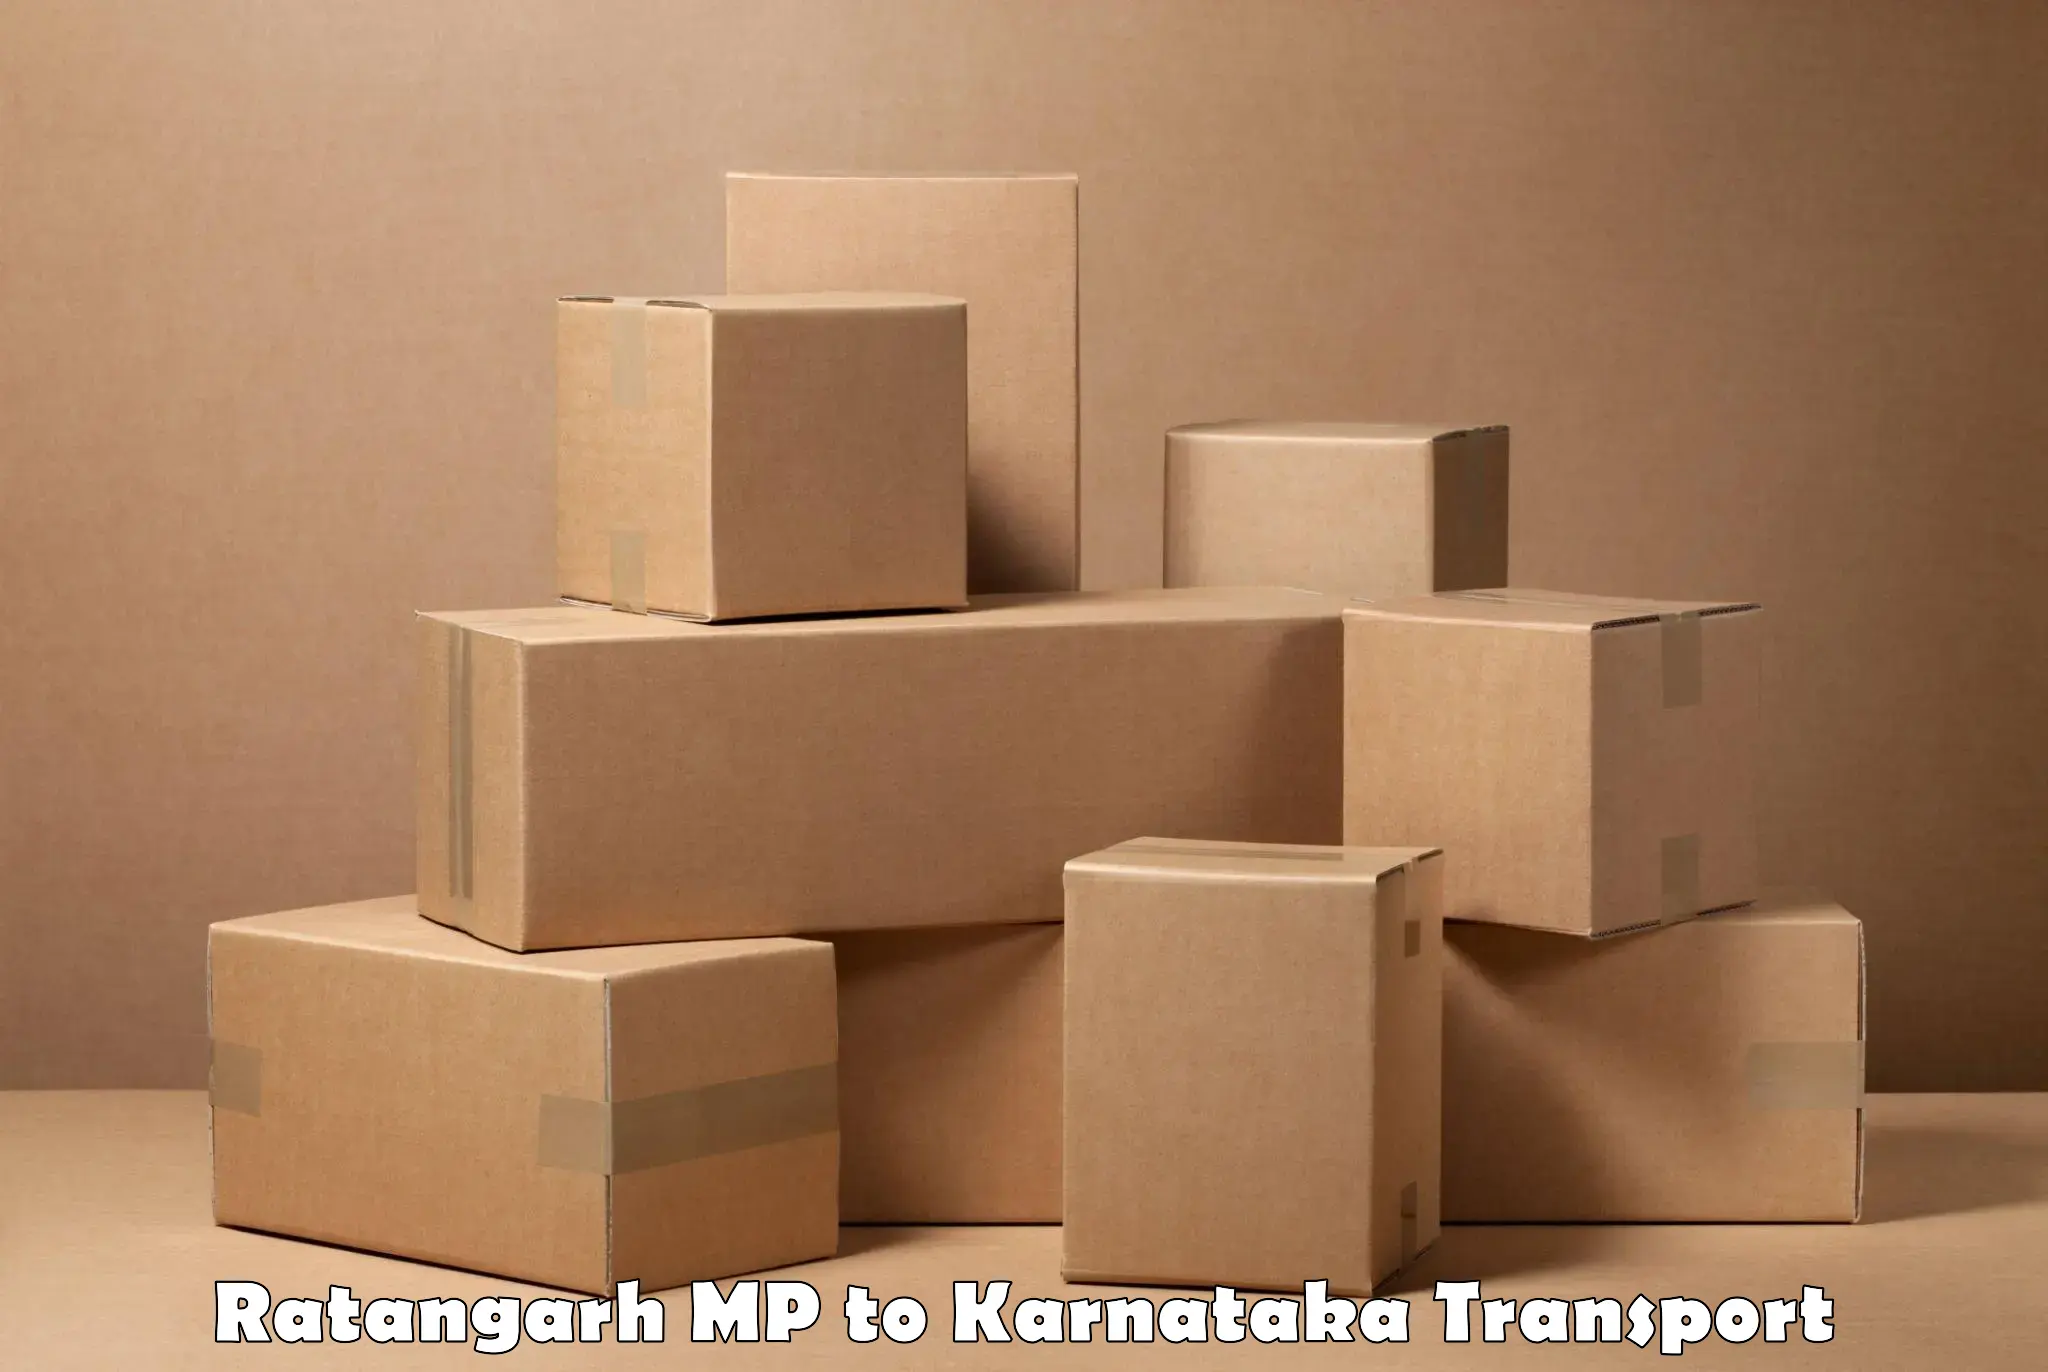 India truck logistics services Ratangarh MP to Kalaghatgi